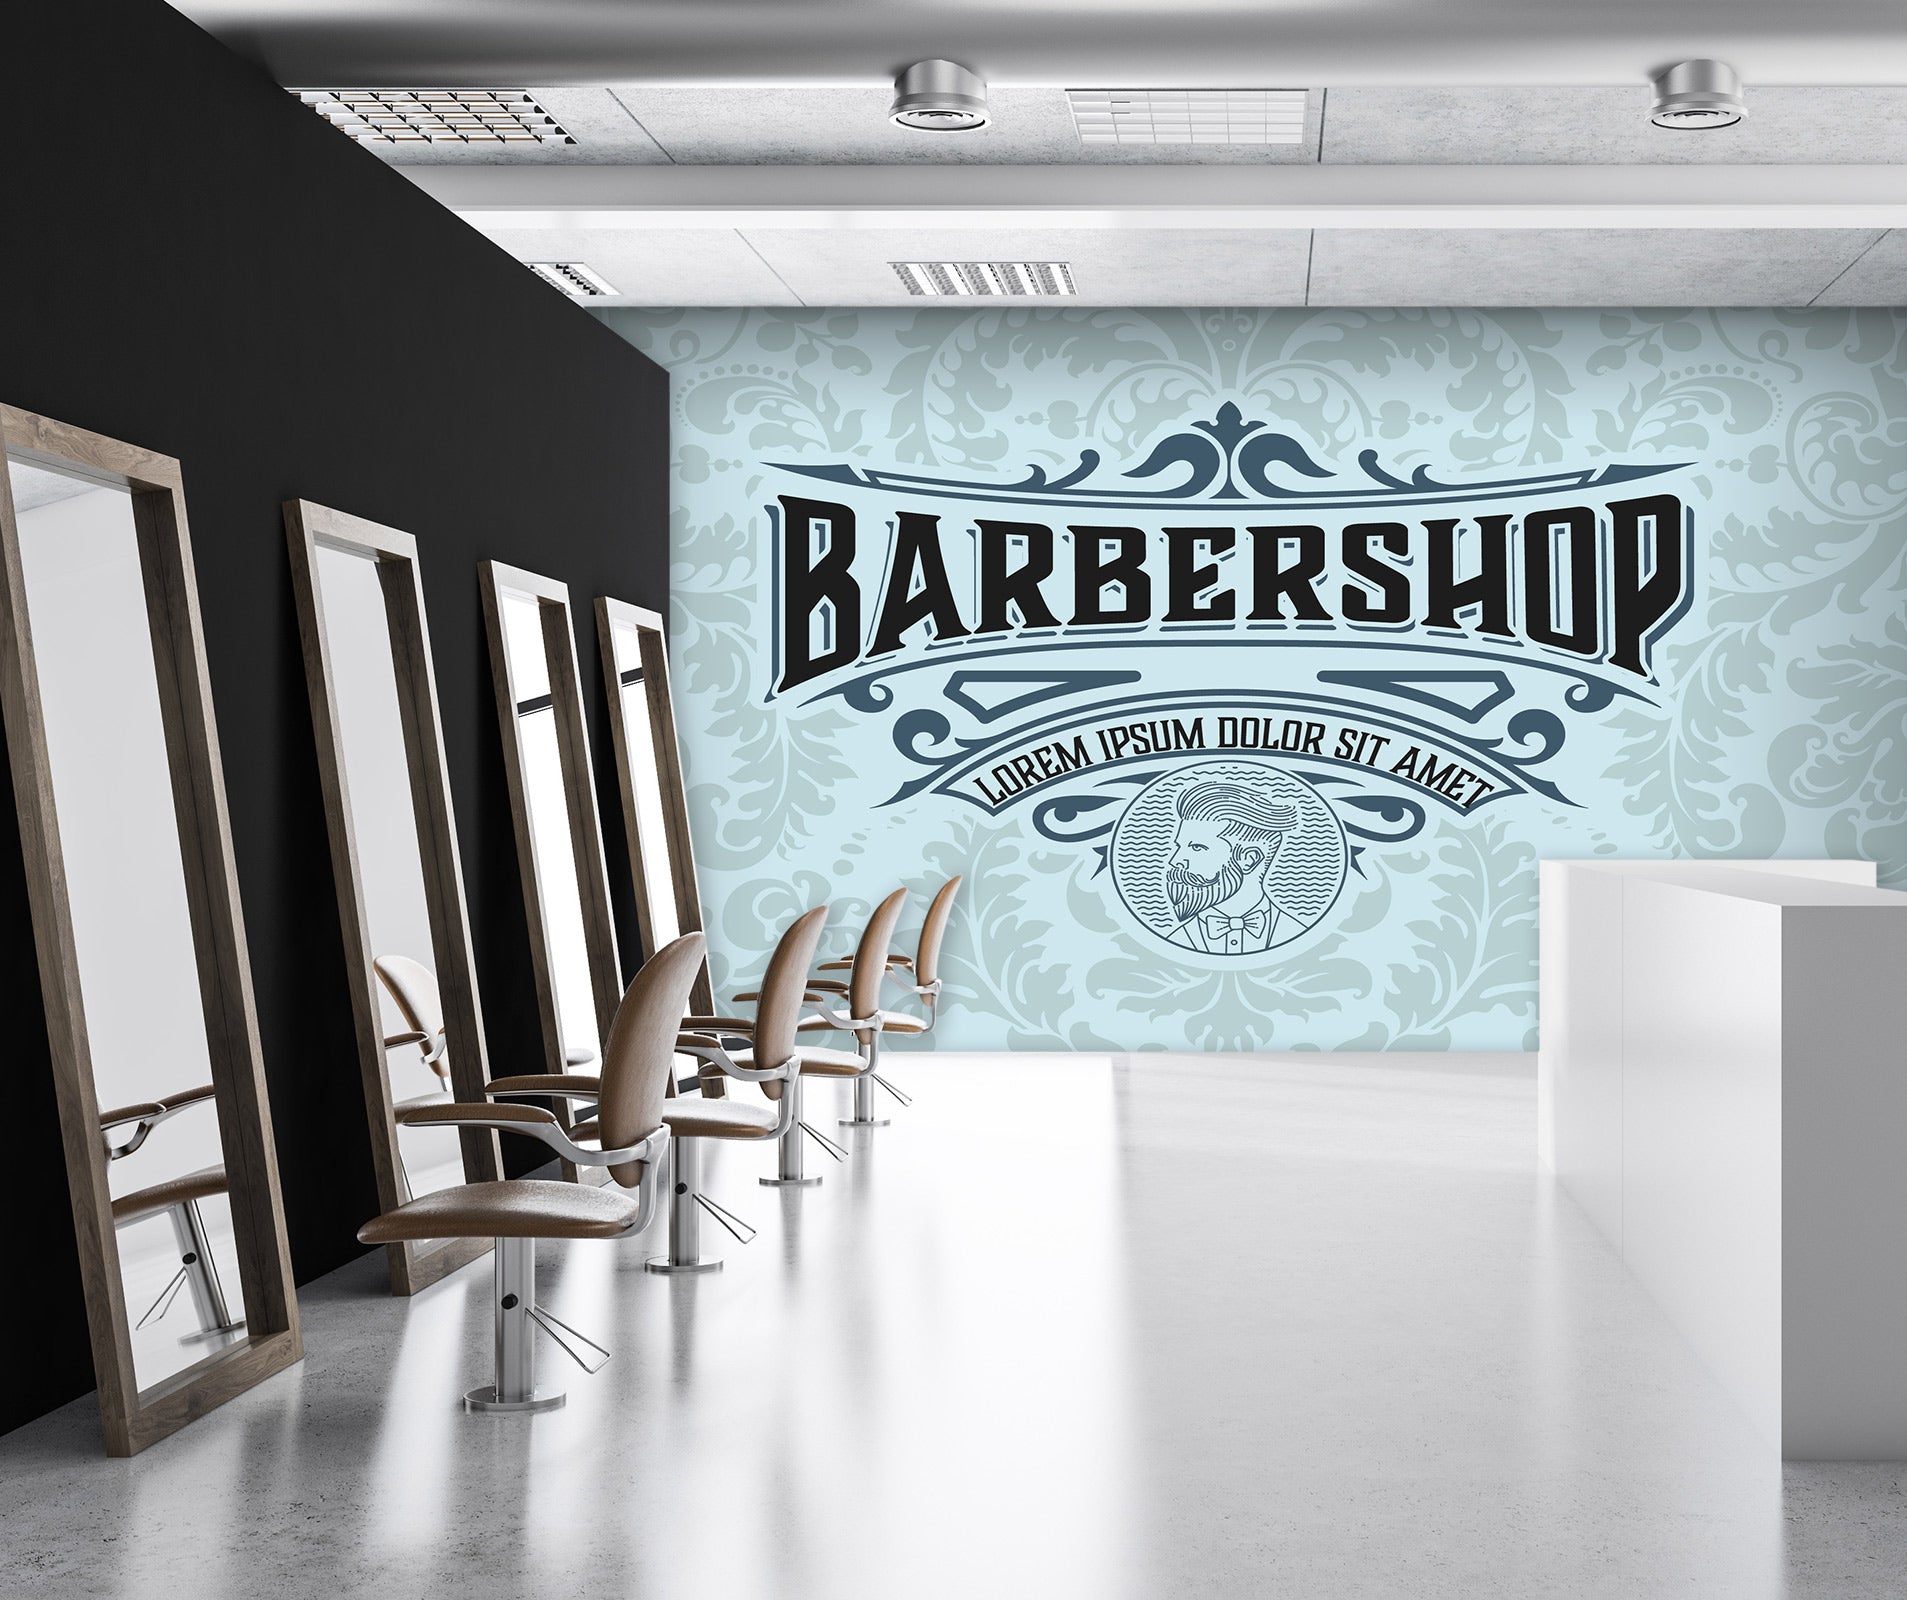 3D Barber Shop Font 115206 Barber Shop Wall Murals